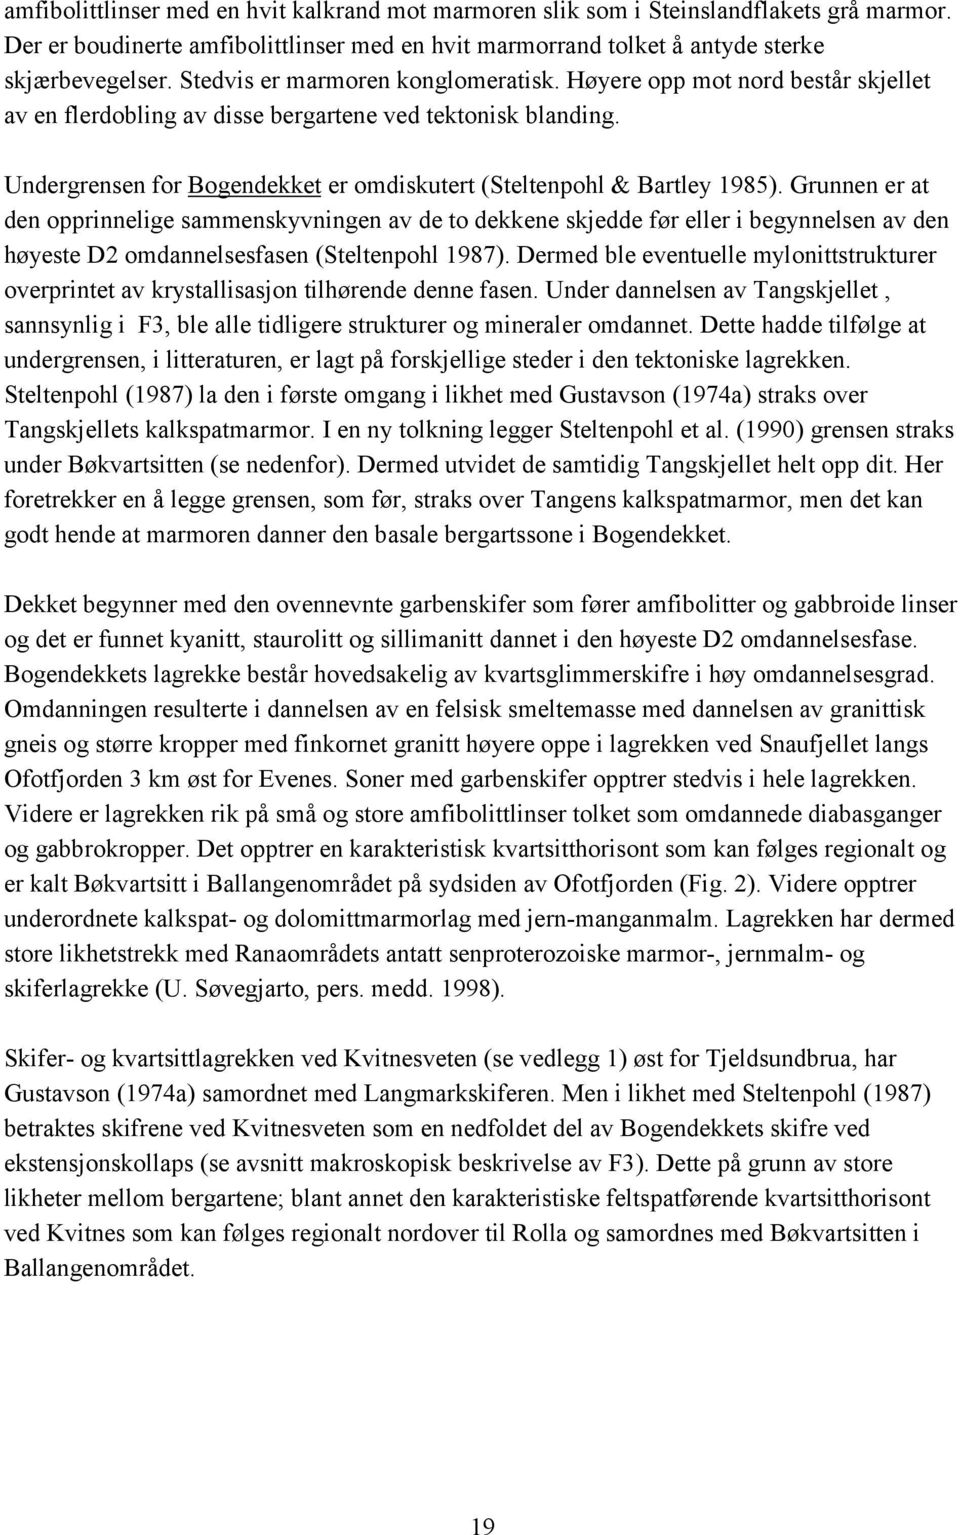 Undergrensen for Bogendekket er omdiskutert (Steltenpohl & Bartley 1985).